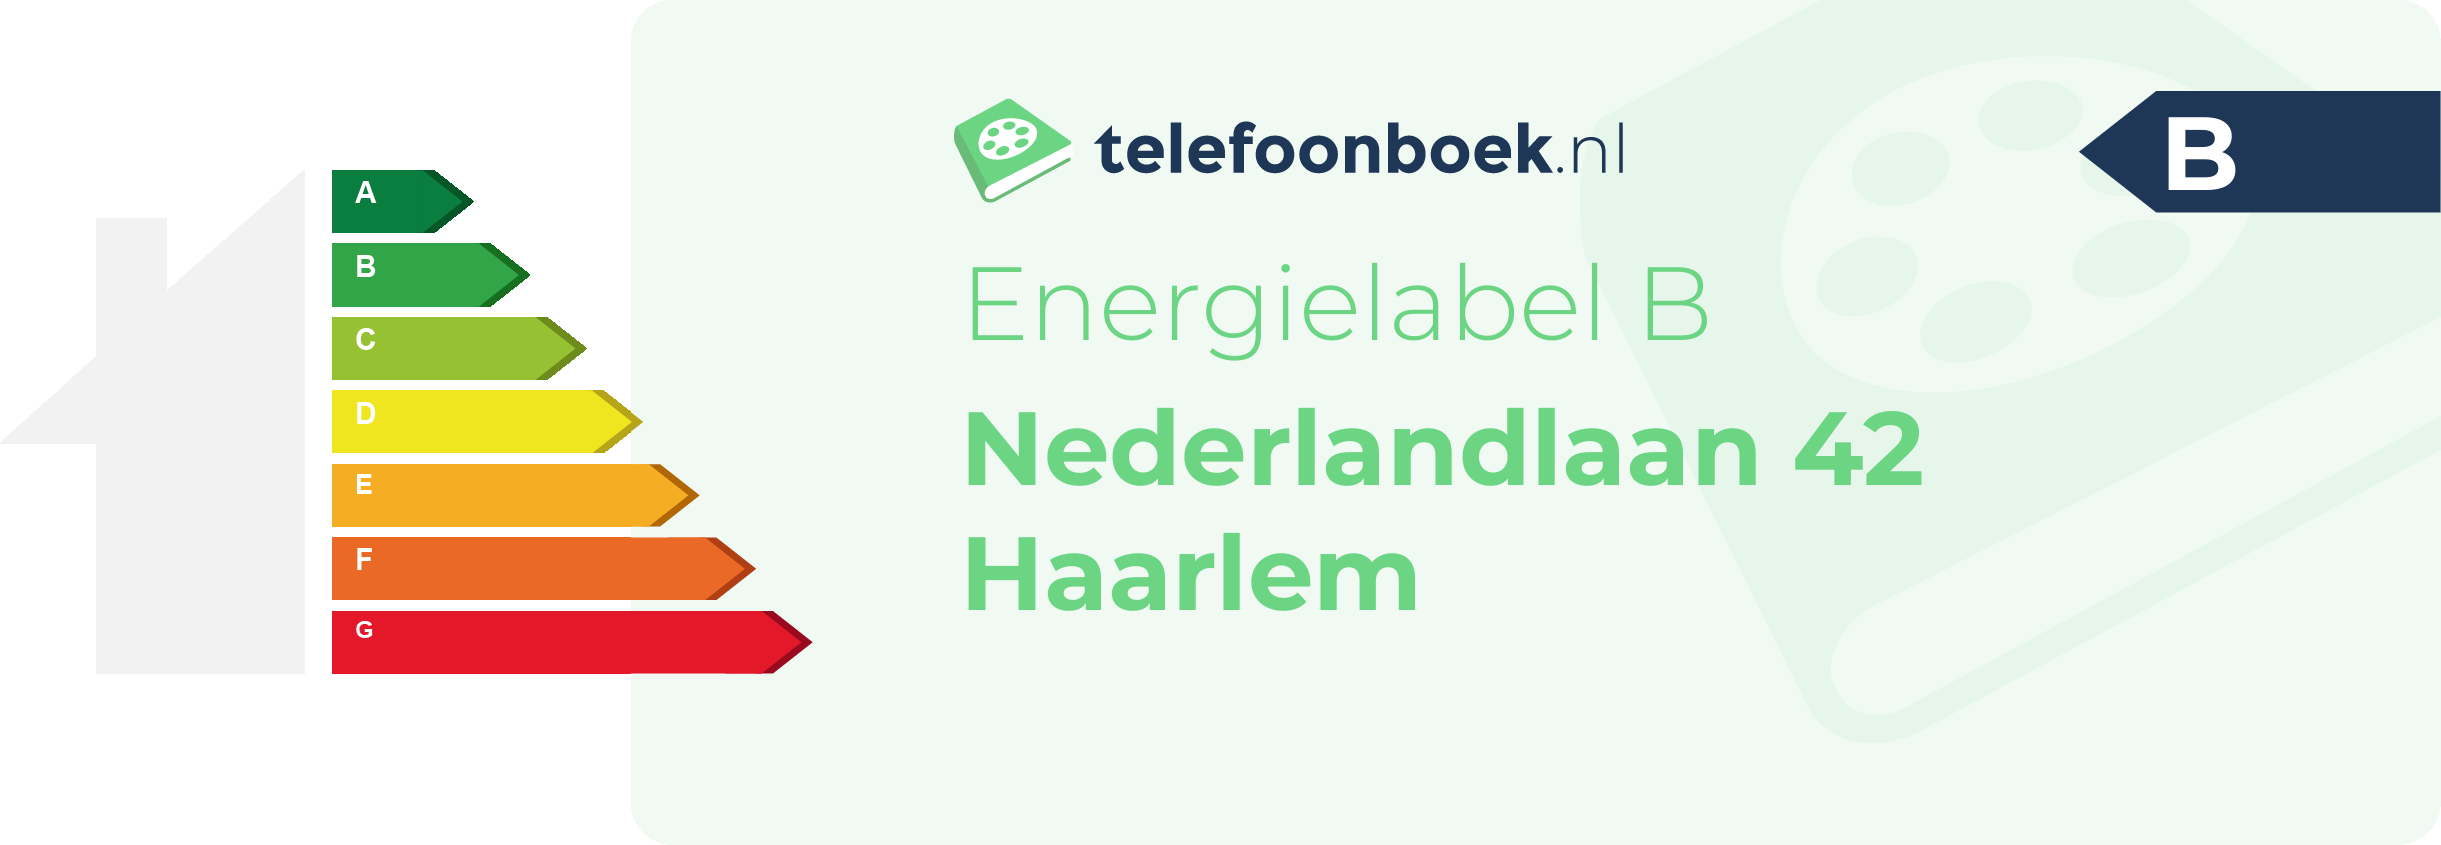 Energielabel Nederlandlaan 42 Haarlem